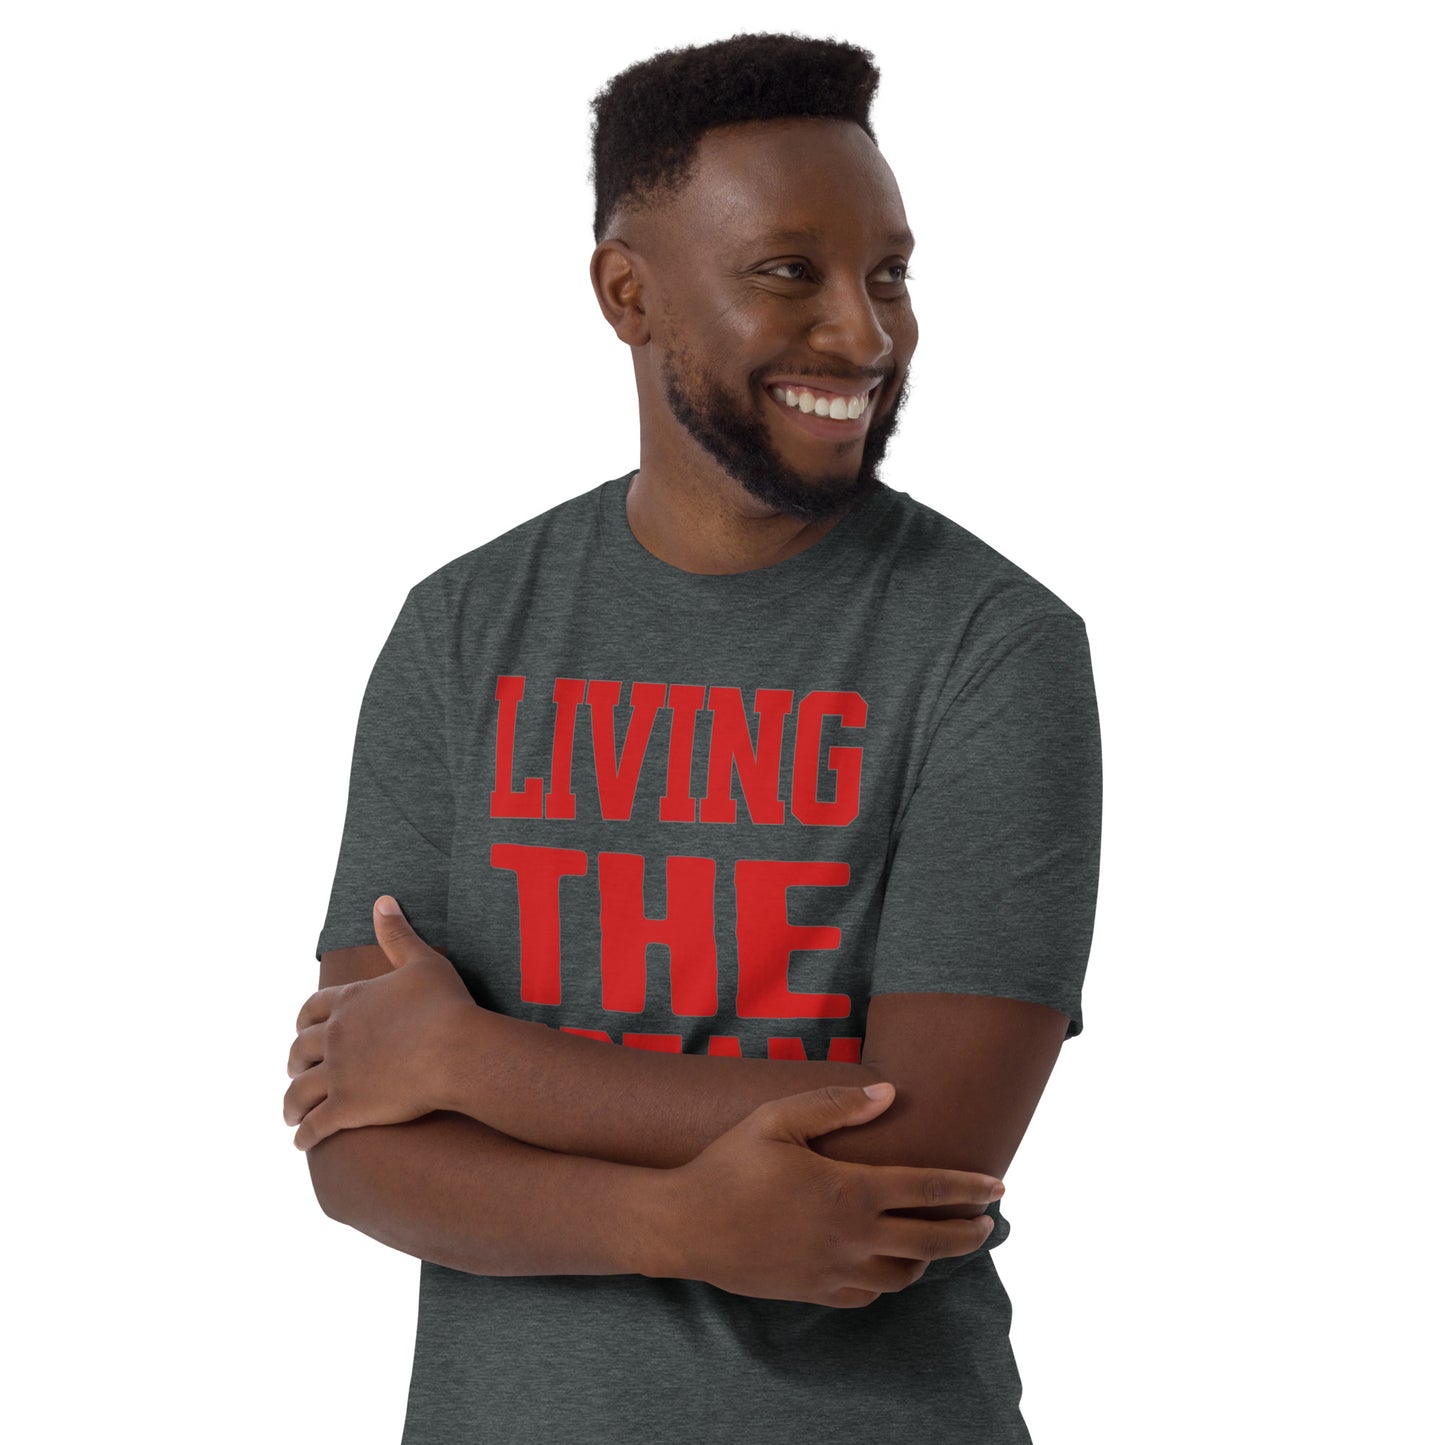 Living the Dream Short-Sleeve Unisex T-Shirt